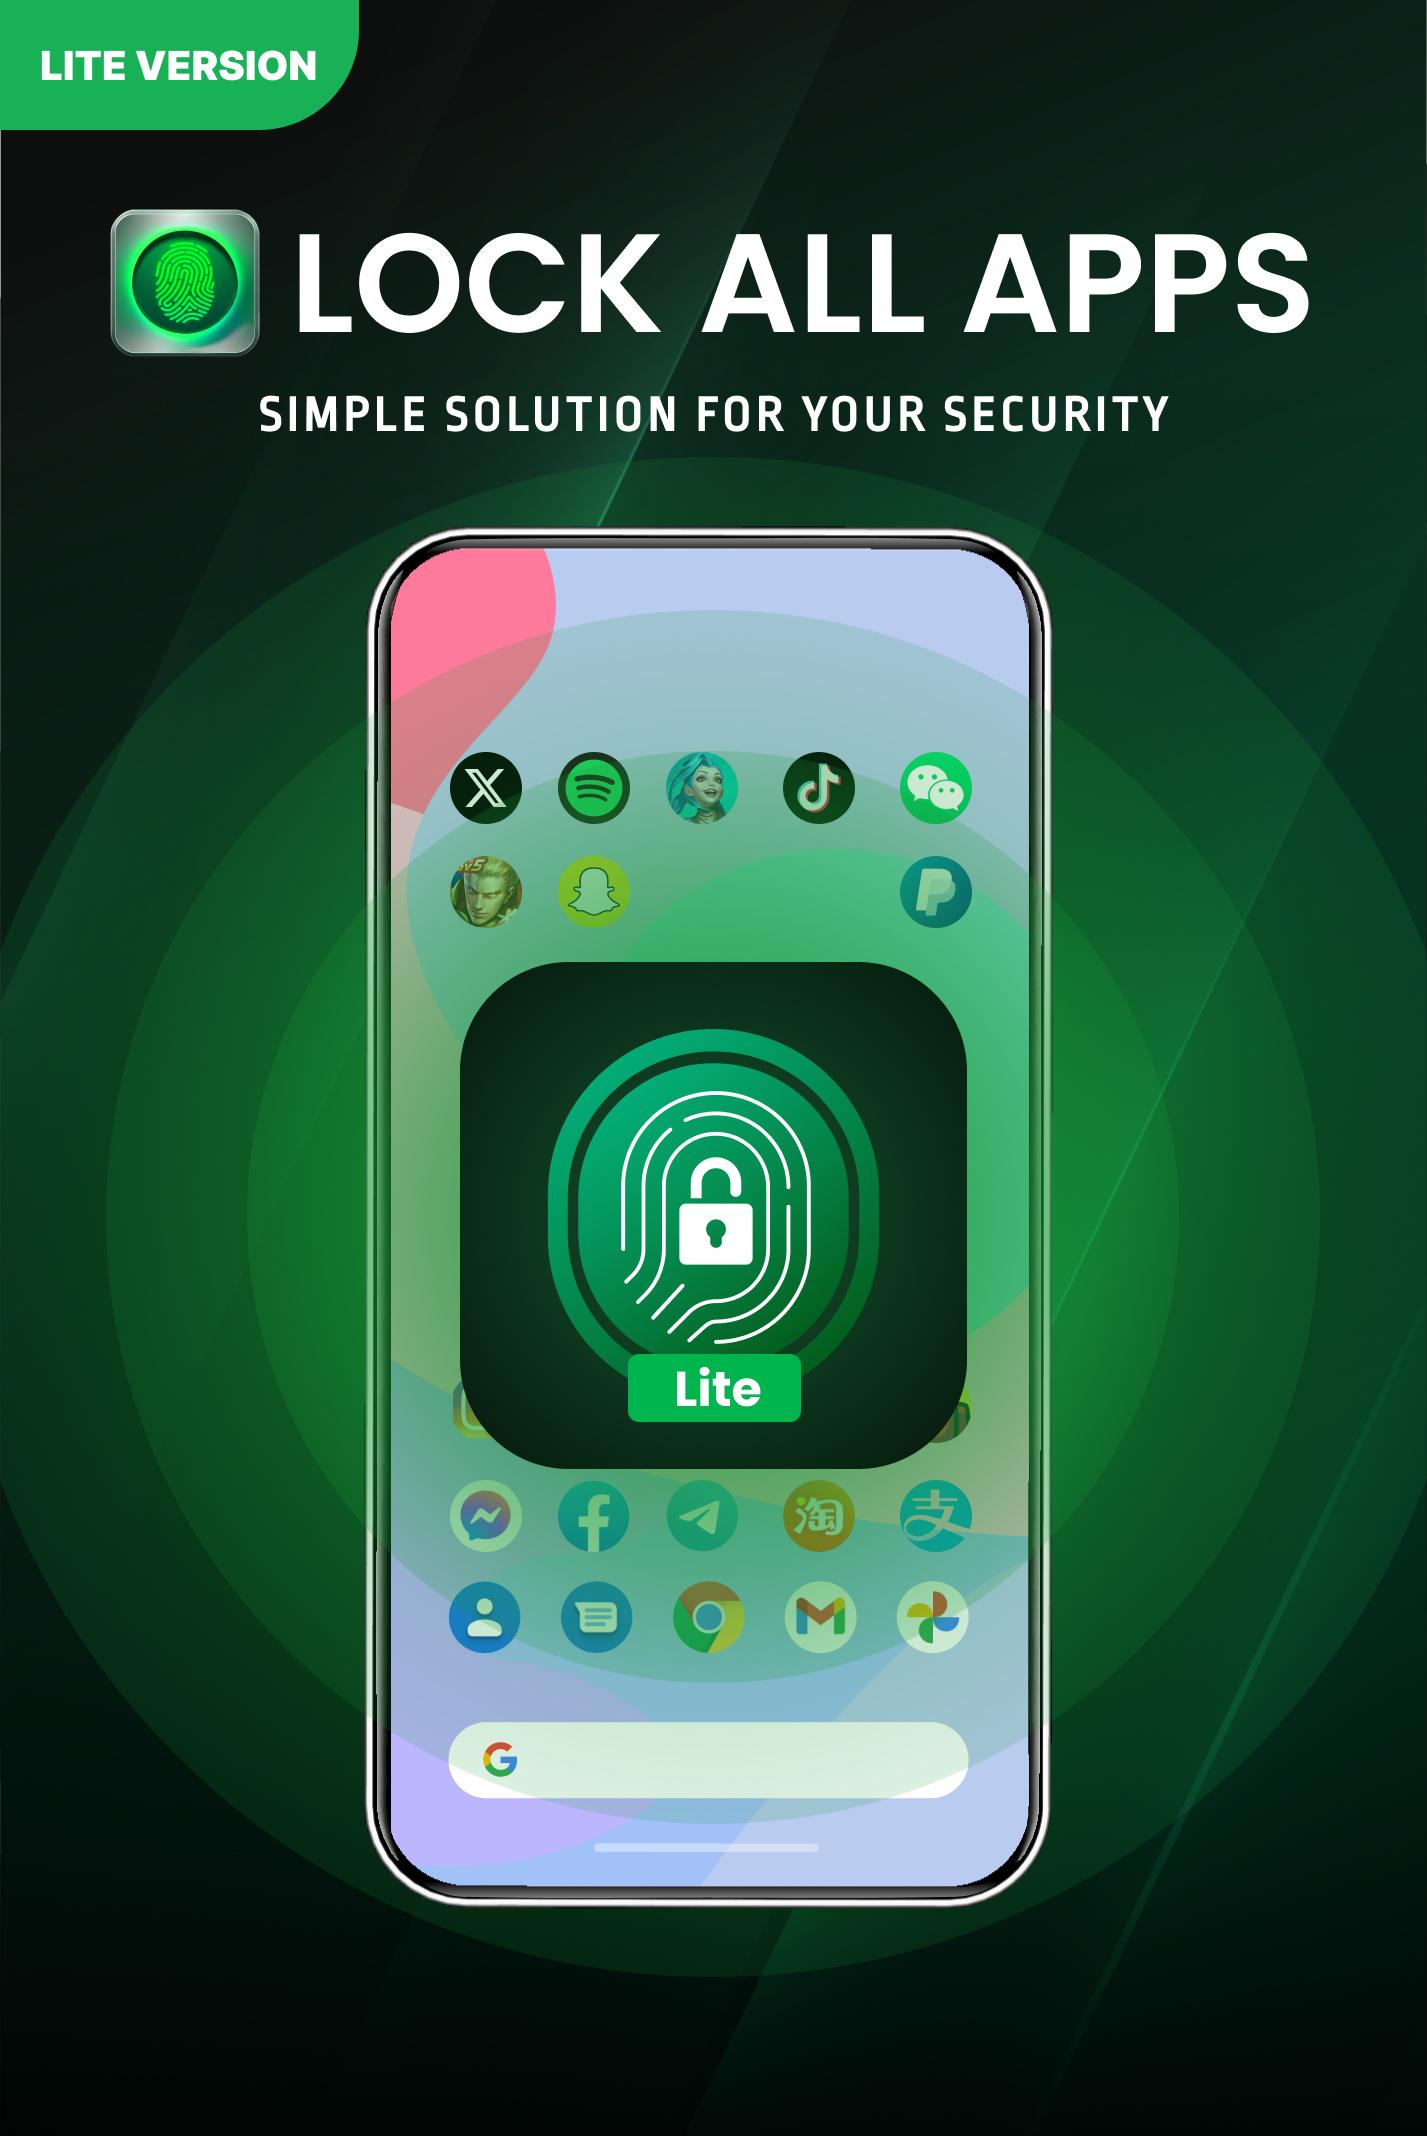 En İyi App Lock & Guard - AppLock Alternatifleri ve Benzer Uygulamalar